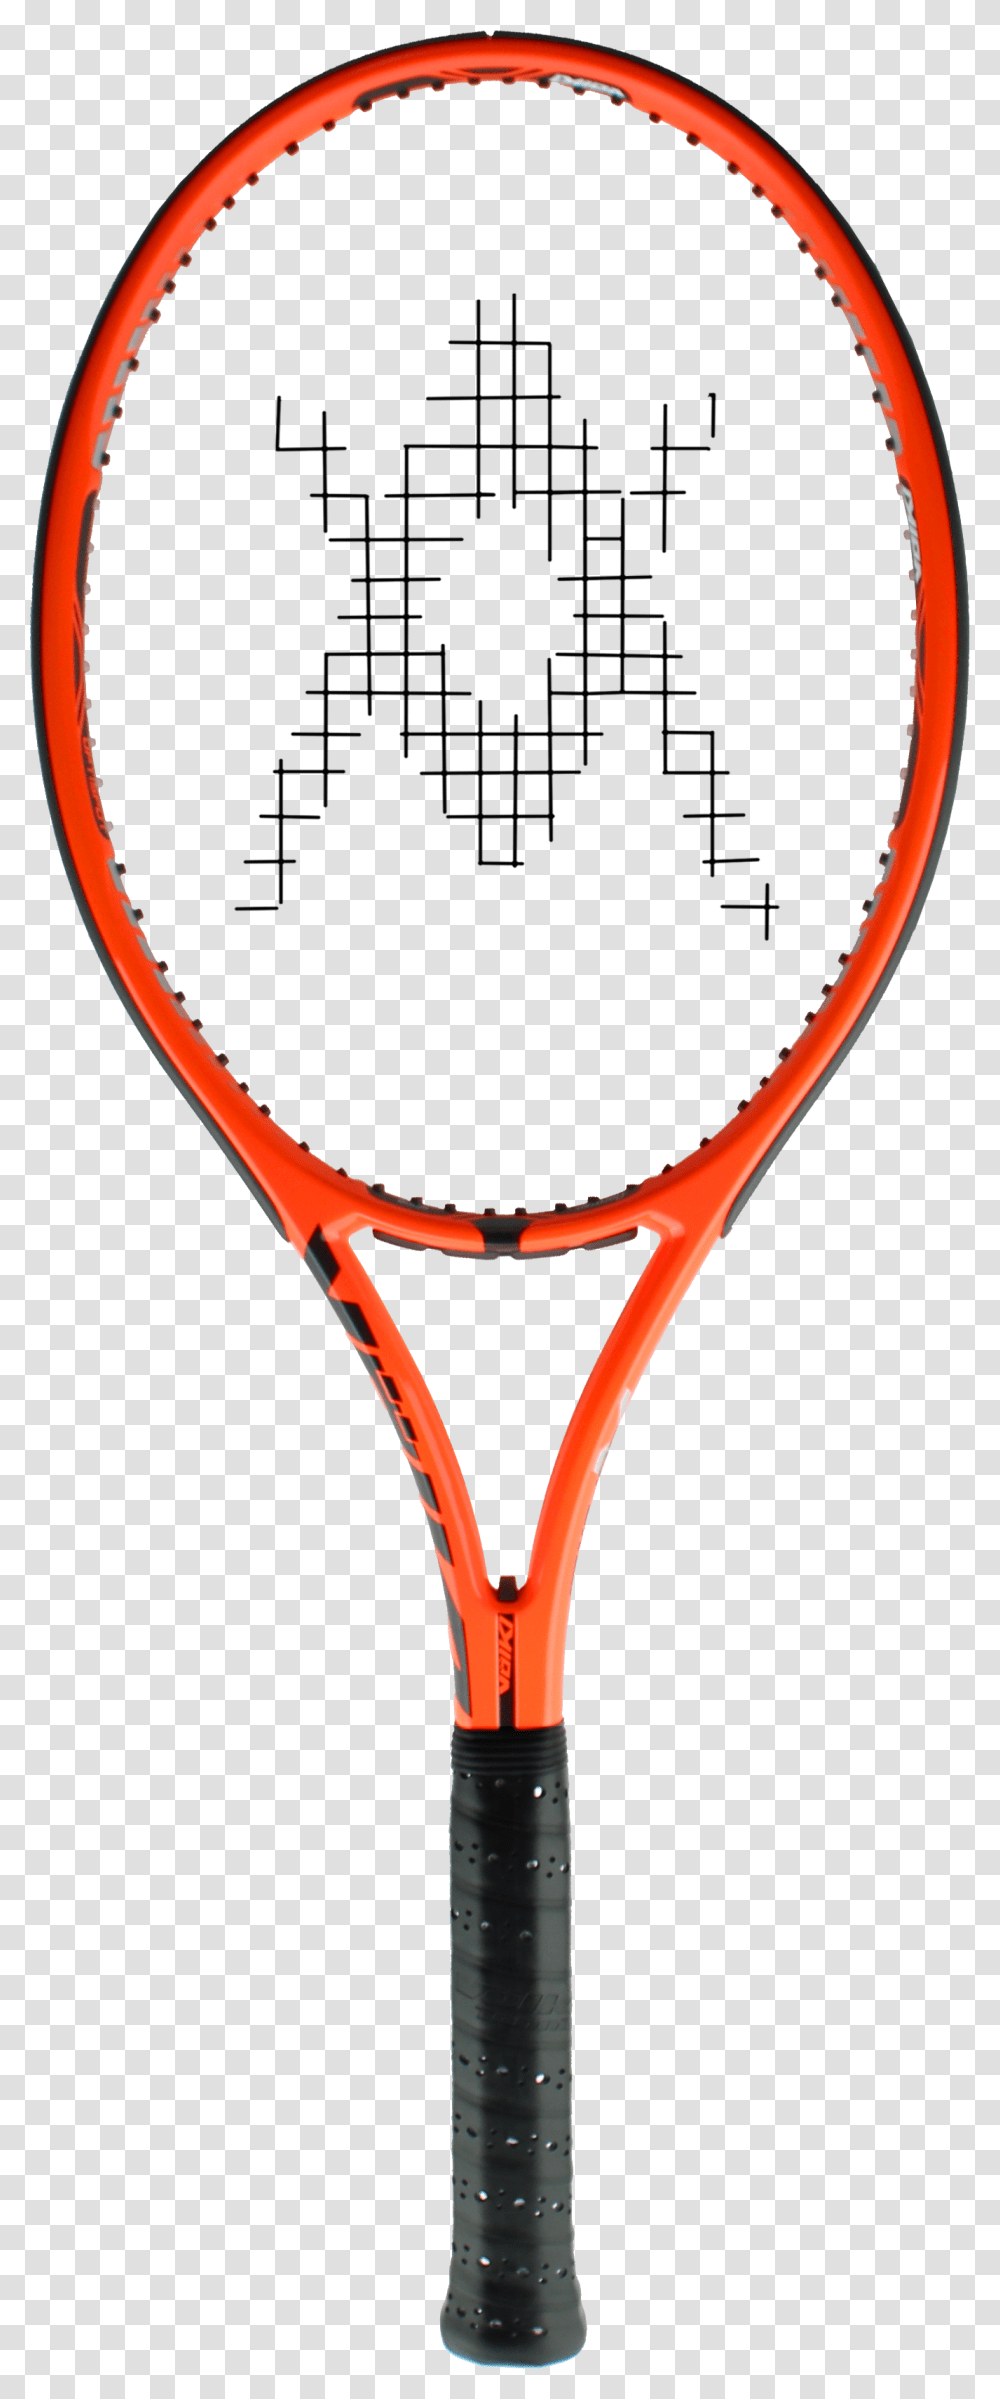 Tennis, Sport, Racket, Tennis Racket Transparent Png